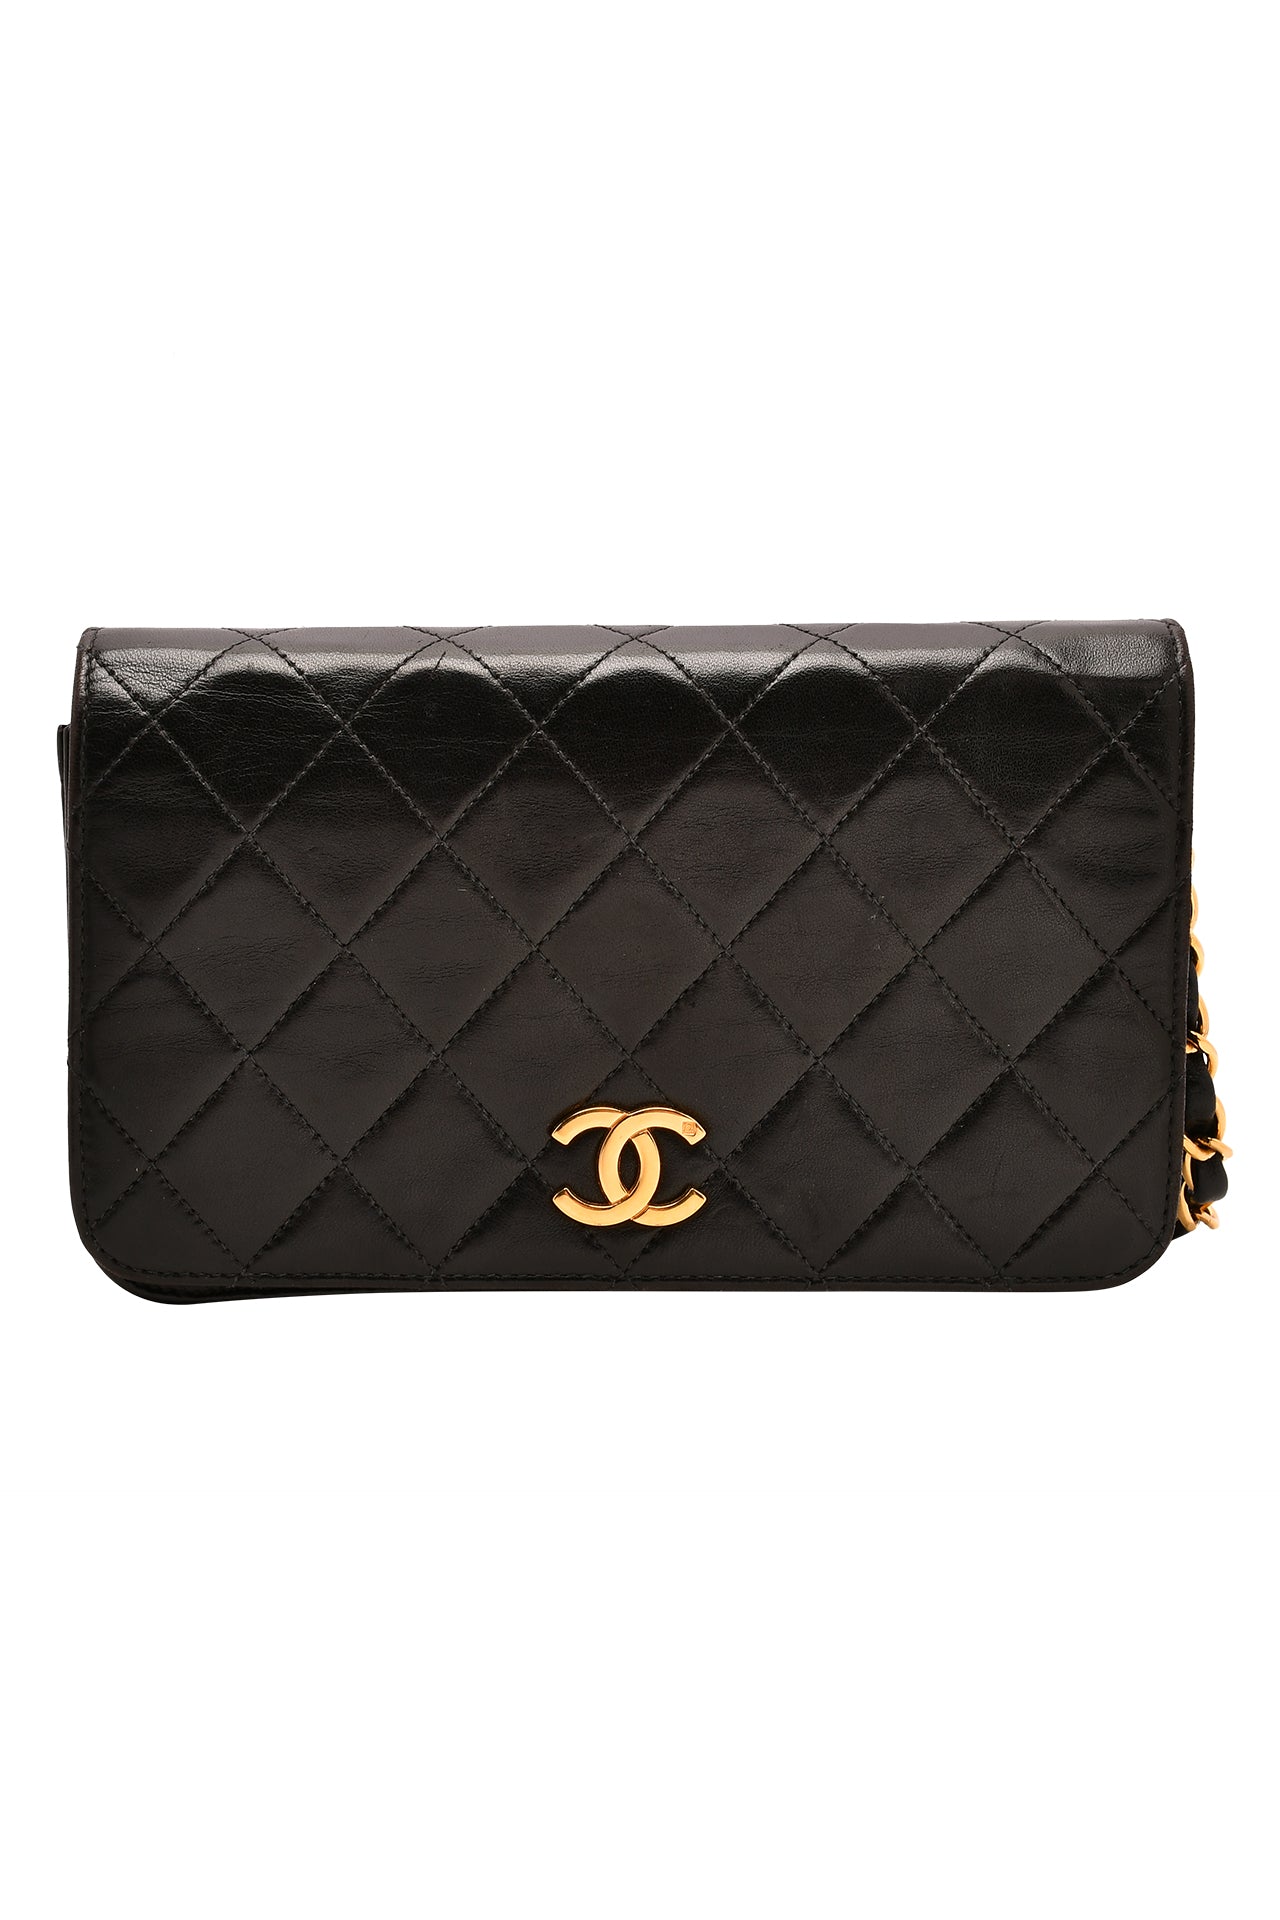 Chanel Full Flap Shoulder Bag